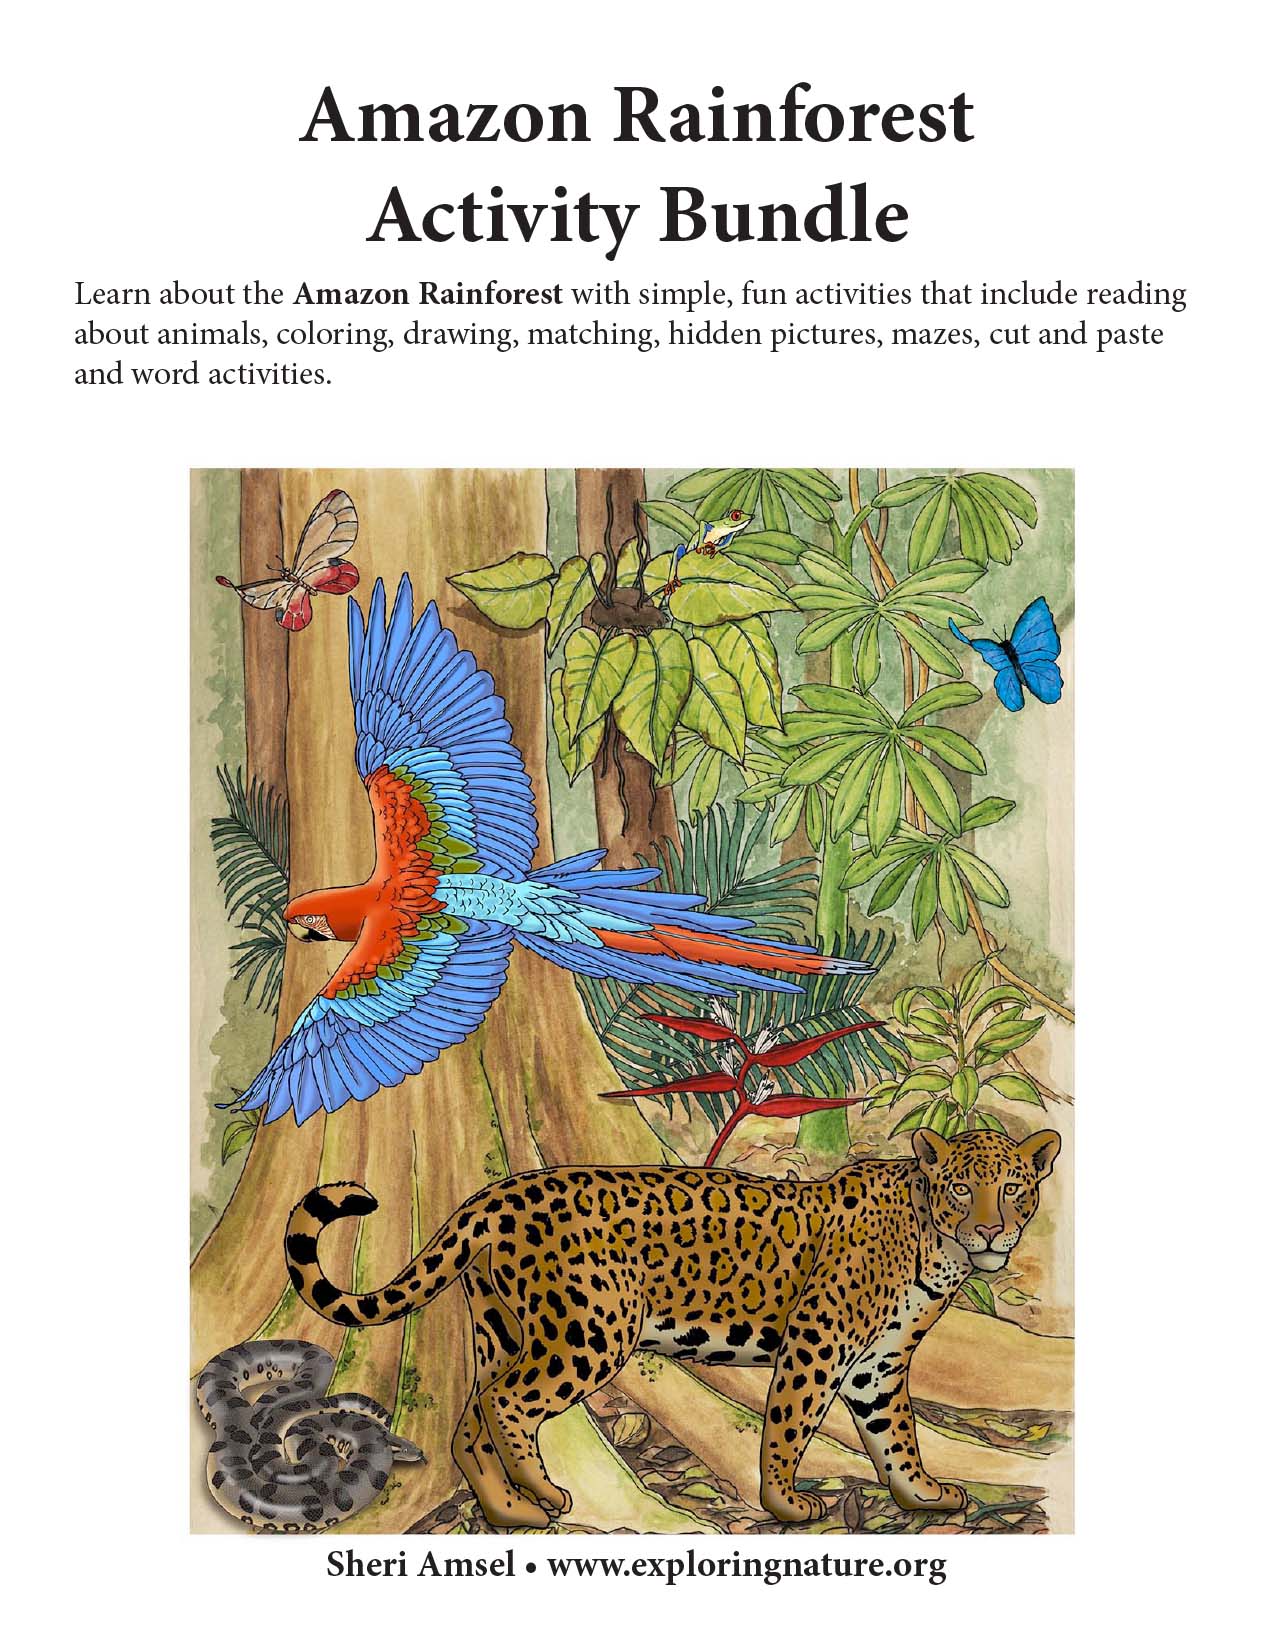 Amazon Rainforest Activity Bundle - Downloadable Only